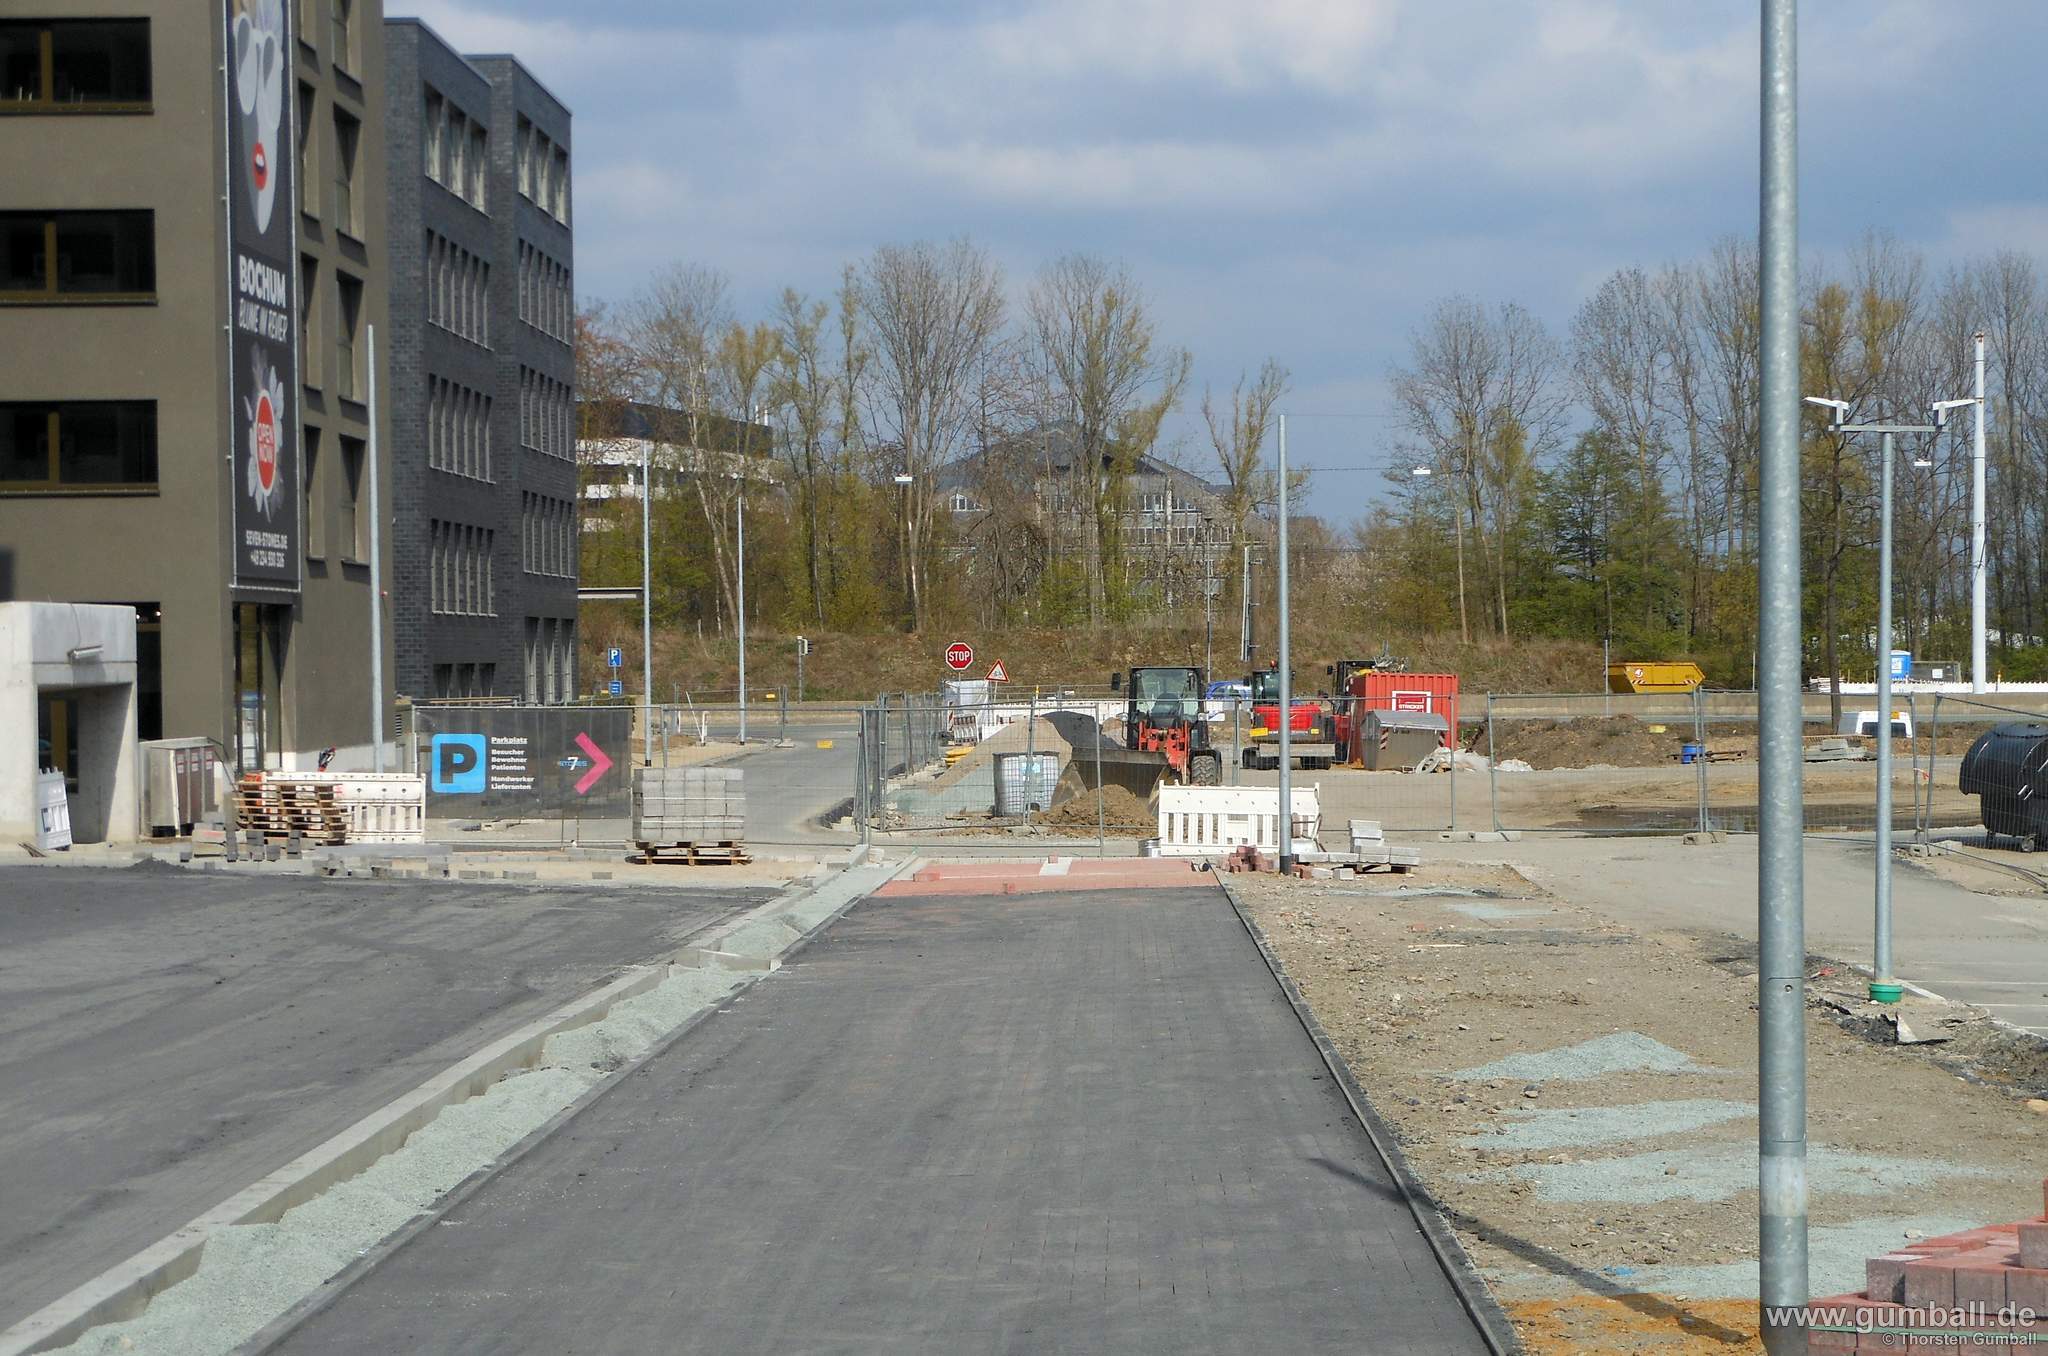 Seven Stones Baustelle, Bochum - April 2021 (5)